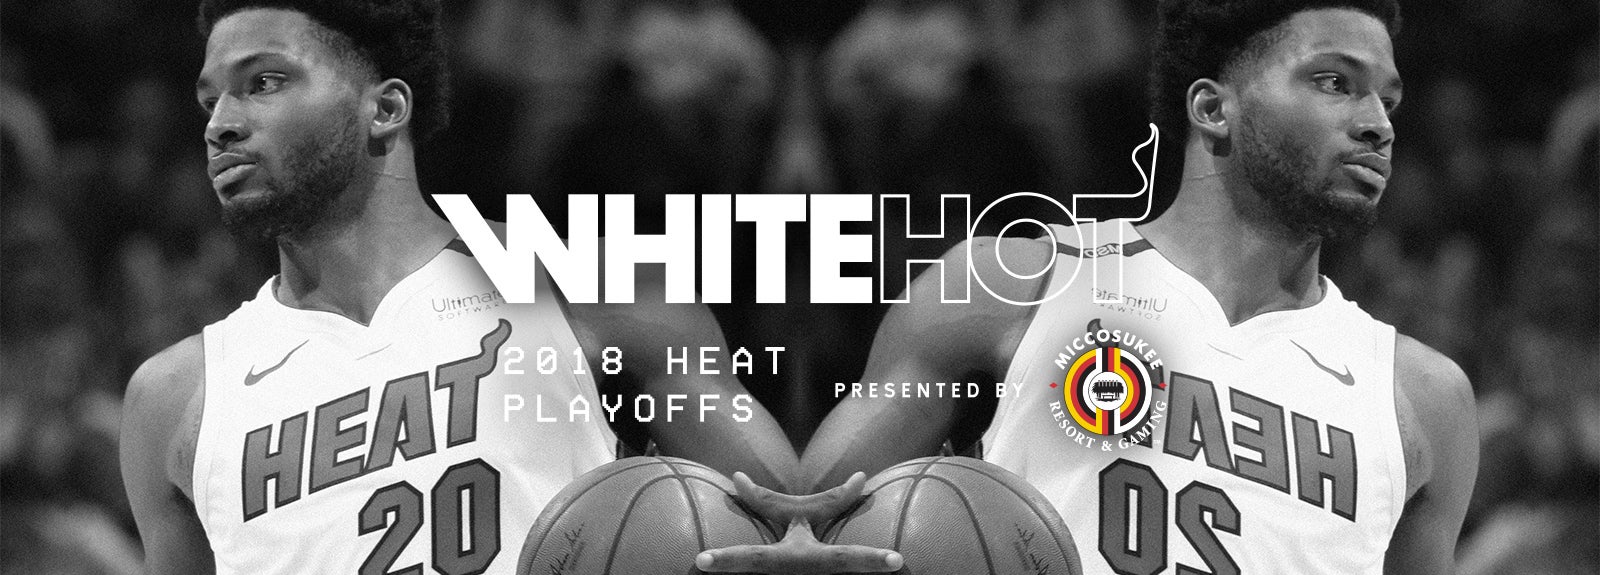 White HOT 2018 HEAT Playoffs